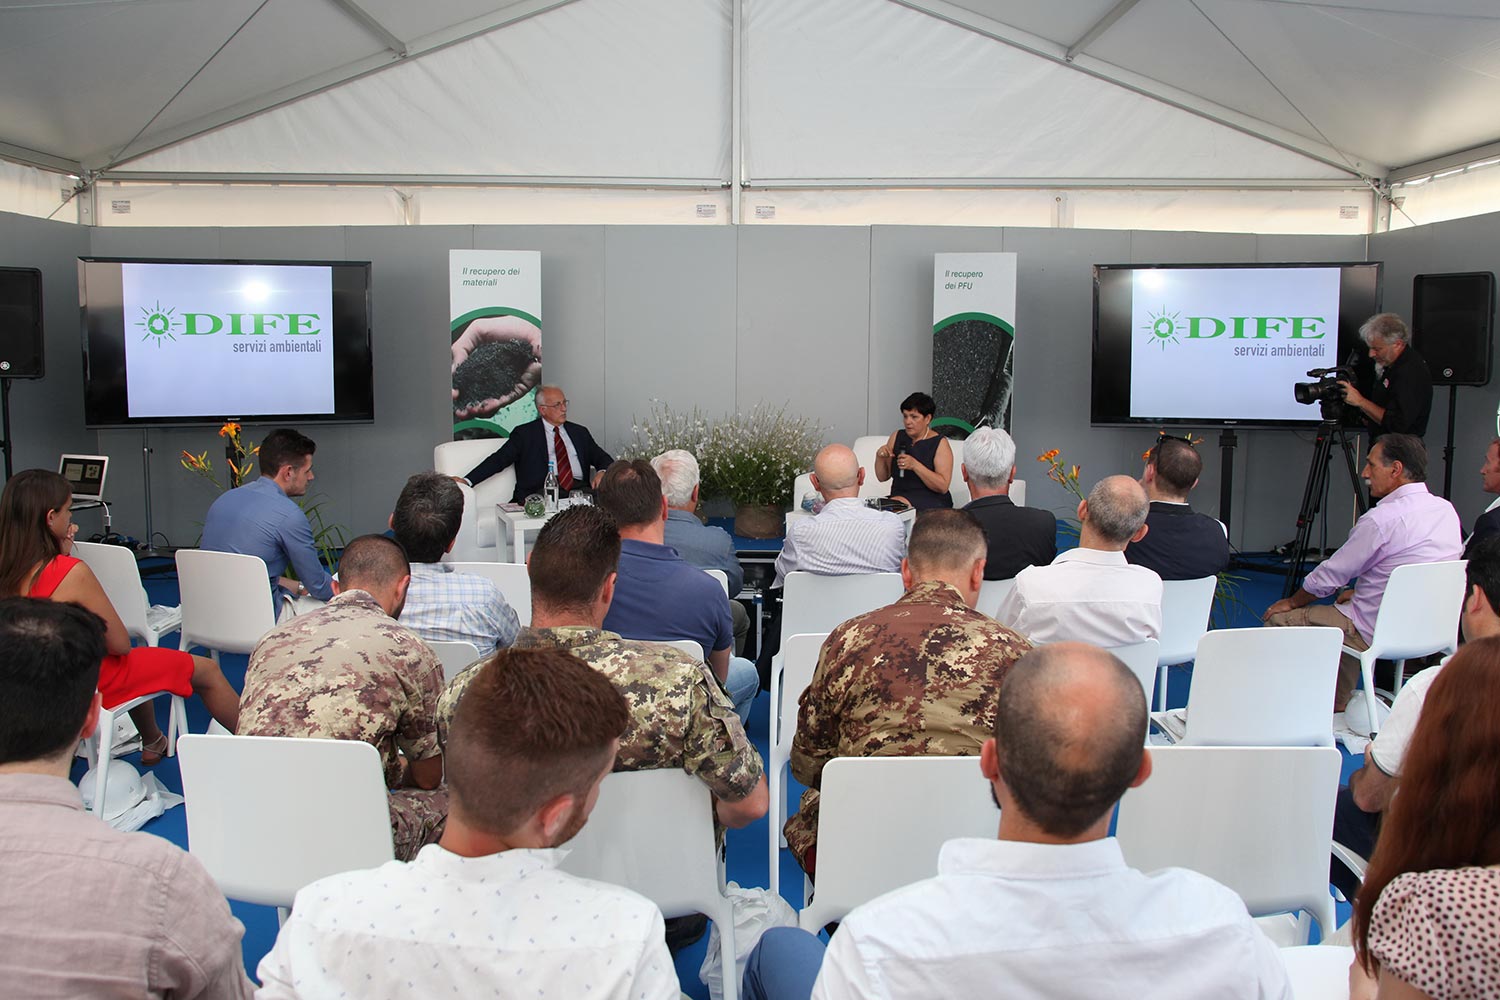 L'impianto di Dife durante l'evento "Impianti Aperti Ecopneus", luglio 2016